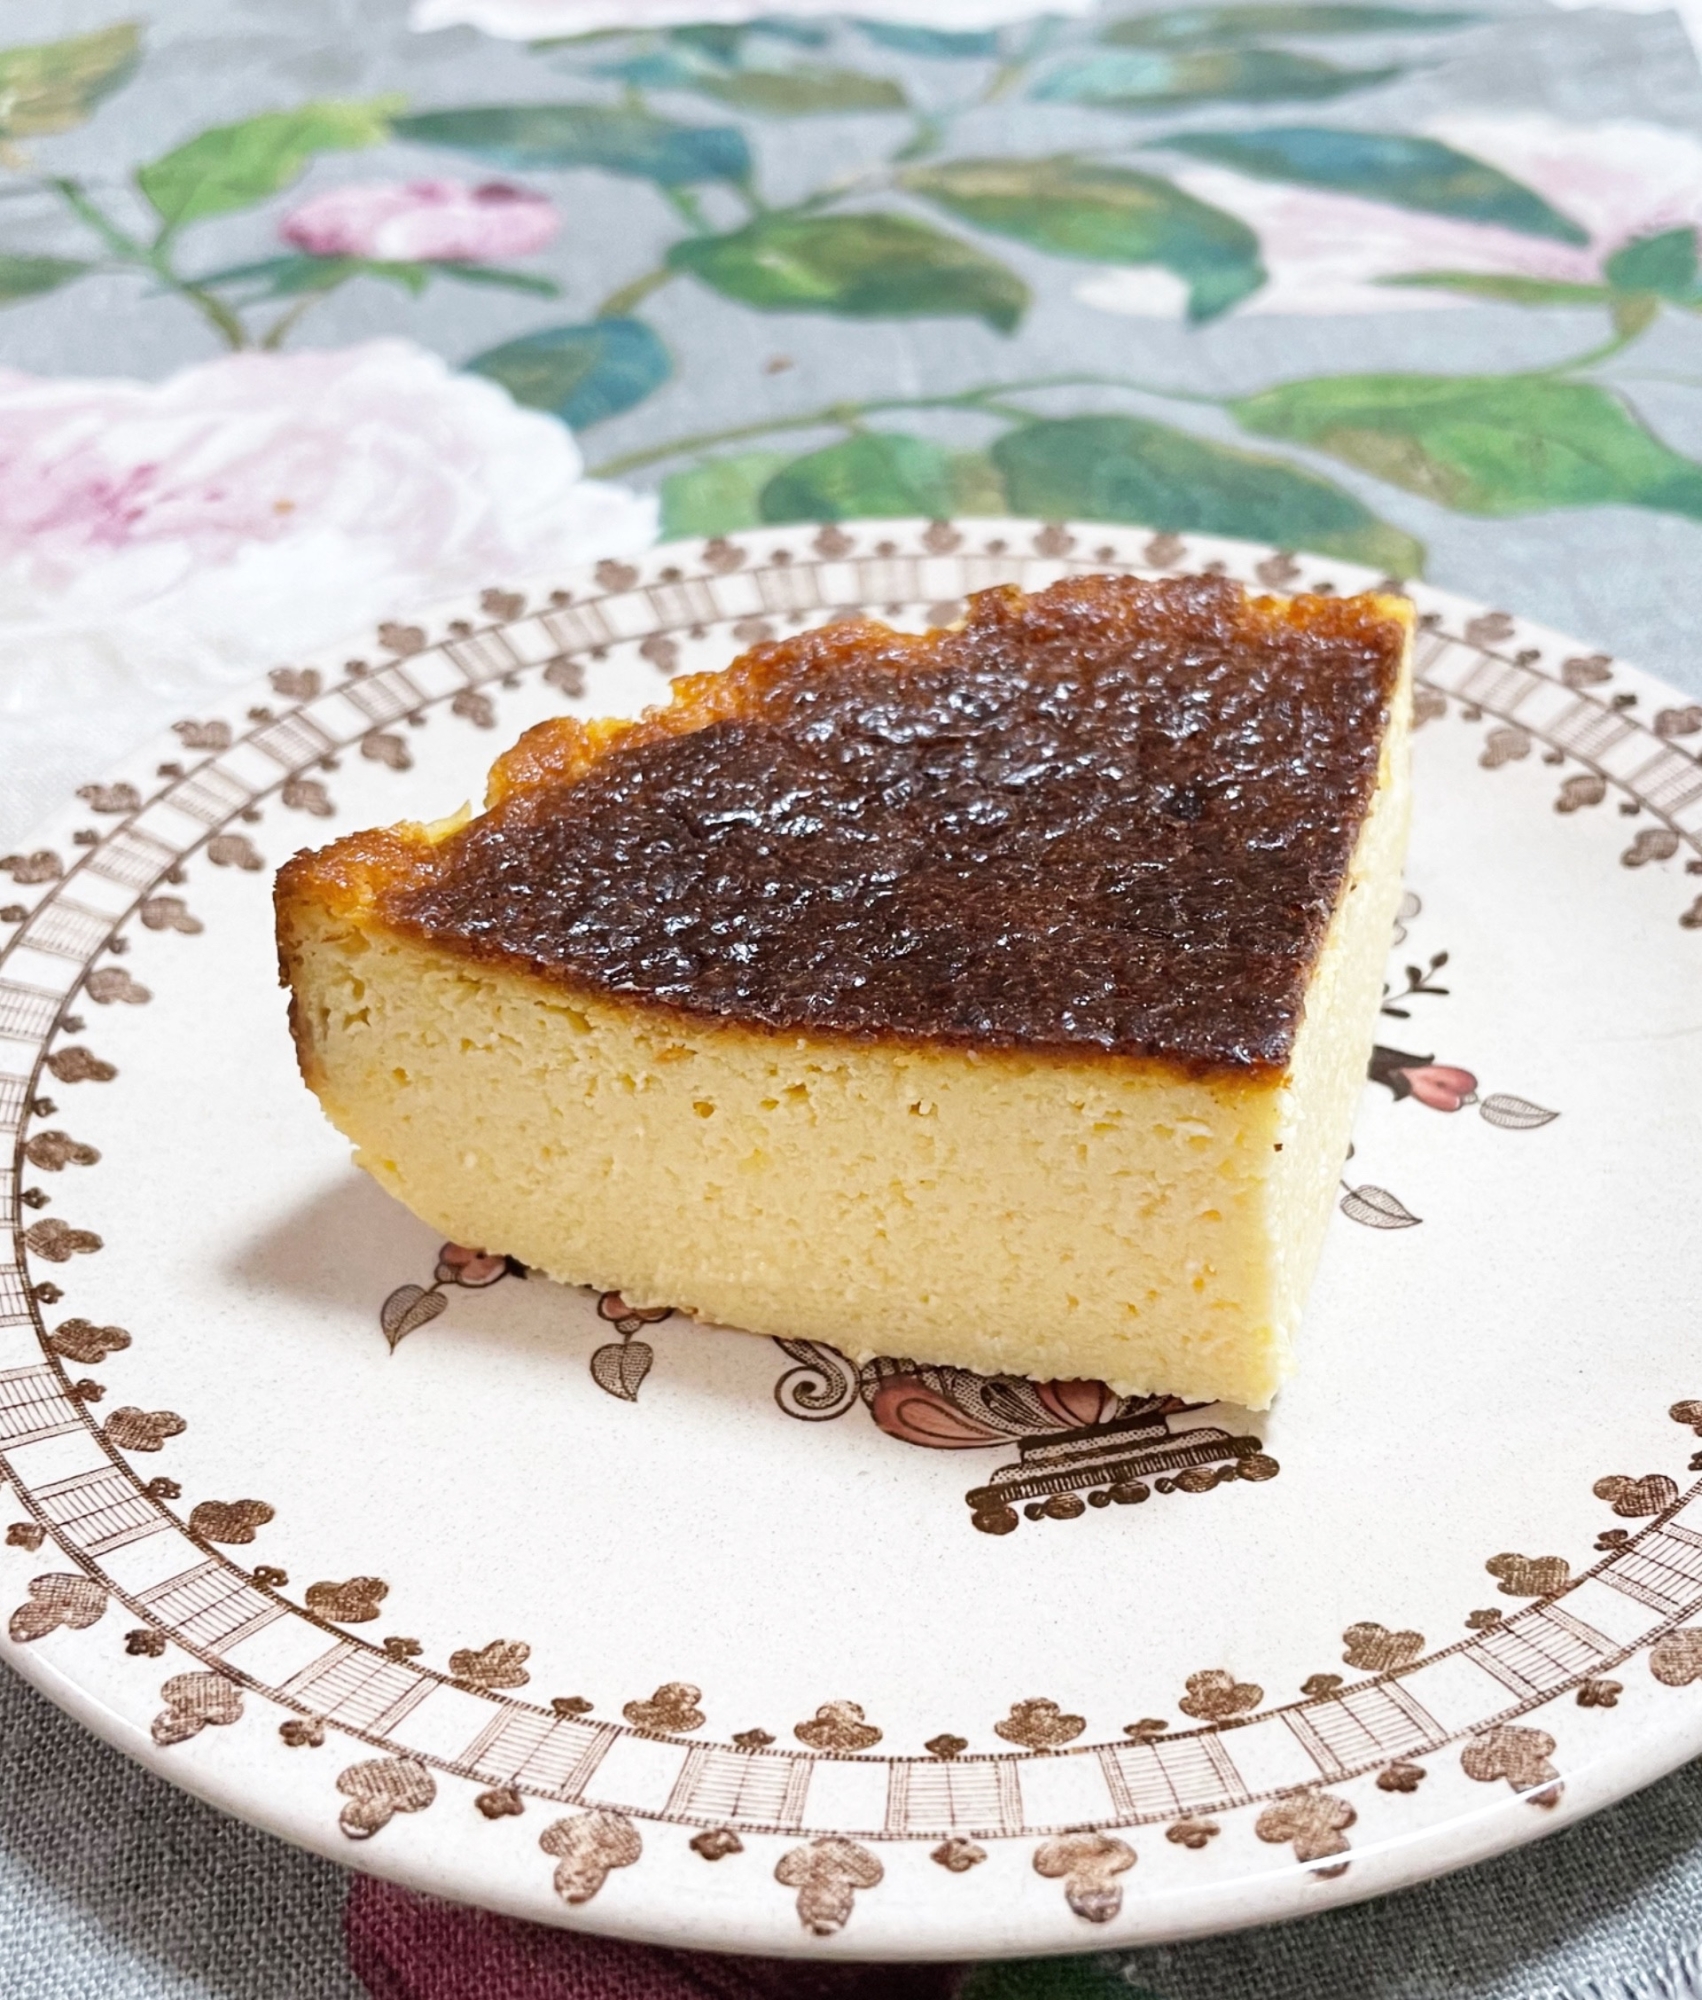 【低糖質&グルテンフリー】バスクチーズケーキ